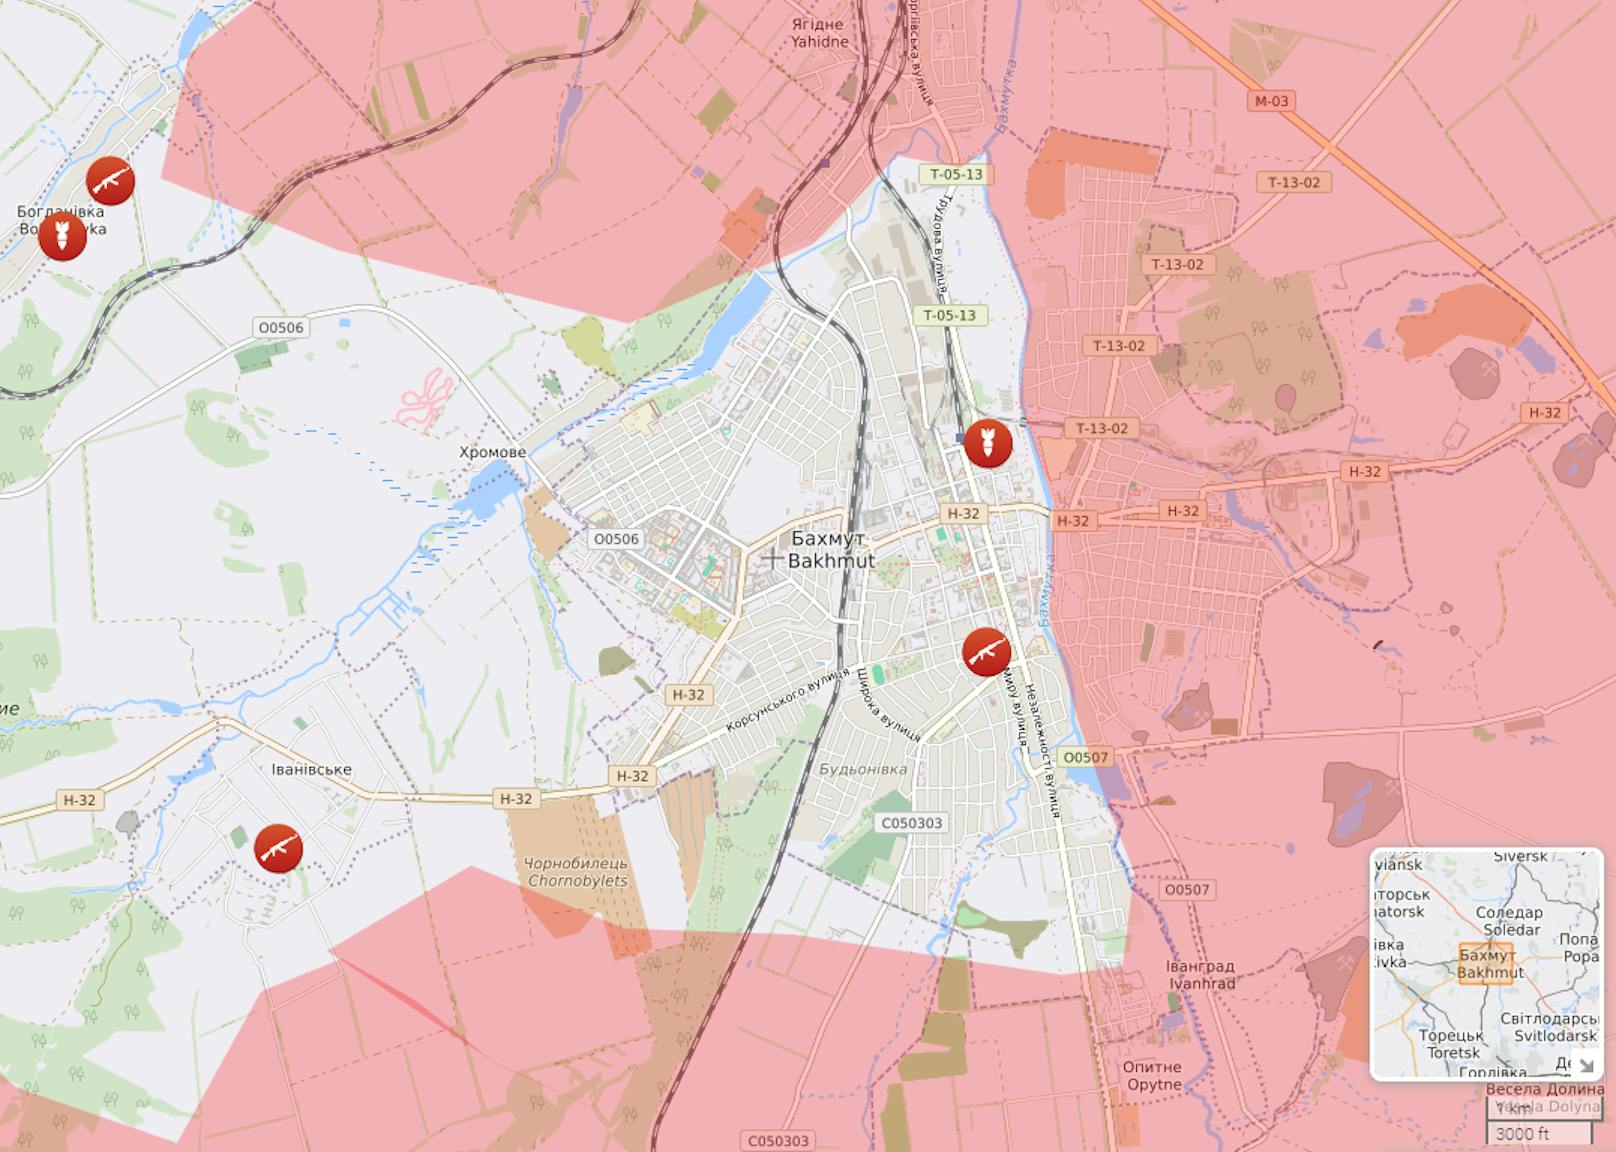 Schlacht um Bachmut: Die rot markierten Bereiche sollen bereits unter russischer Kontrolle stehen. Stand: 8. März 2023